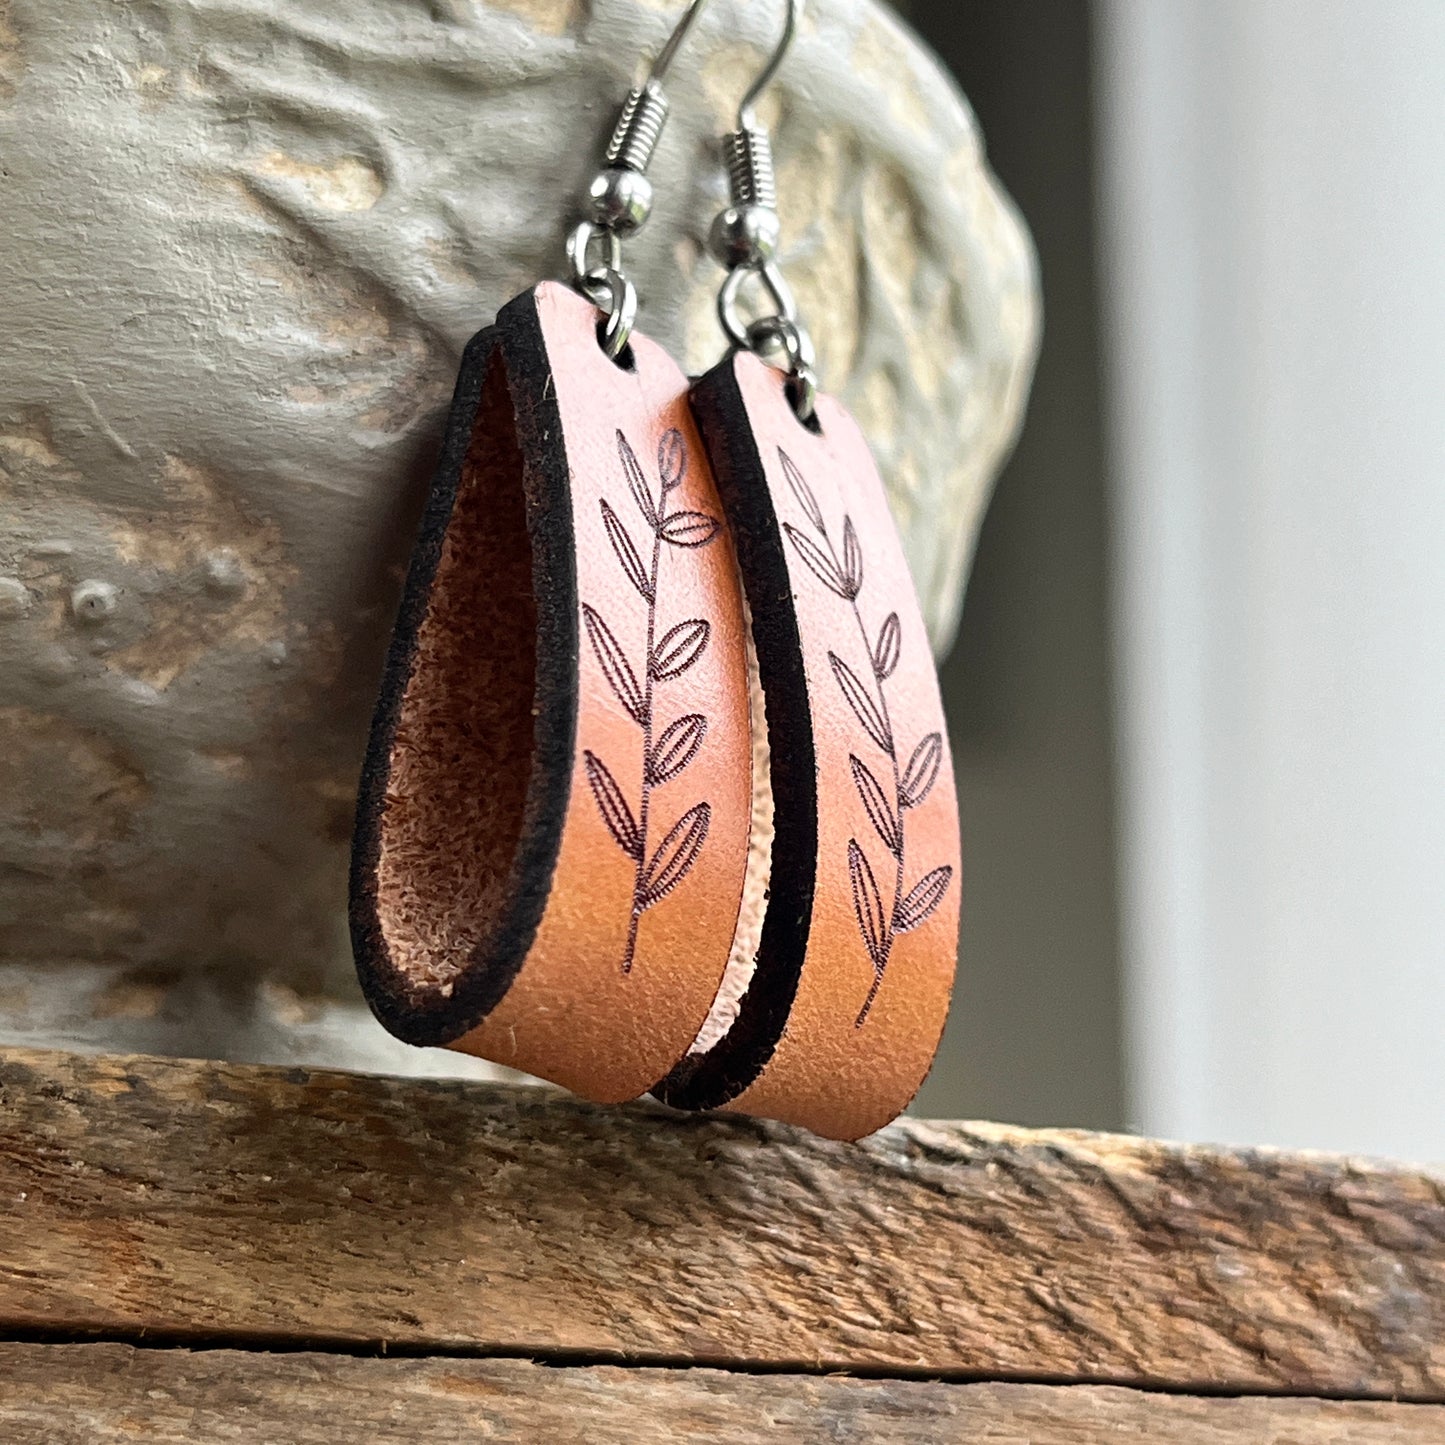 Boho Genuine Leather Engraved Earrings with Leaf Design, Modern Loop Earrings